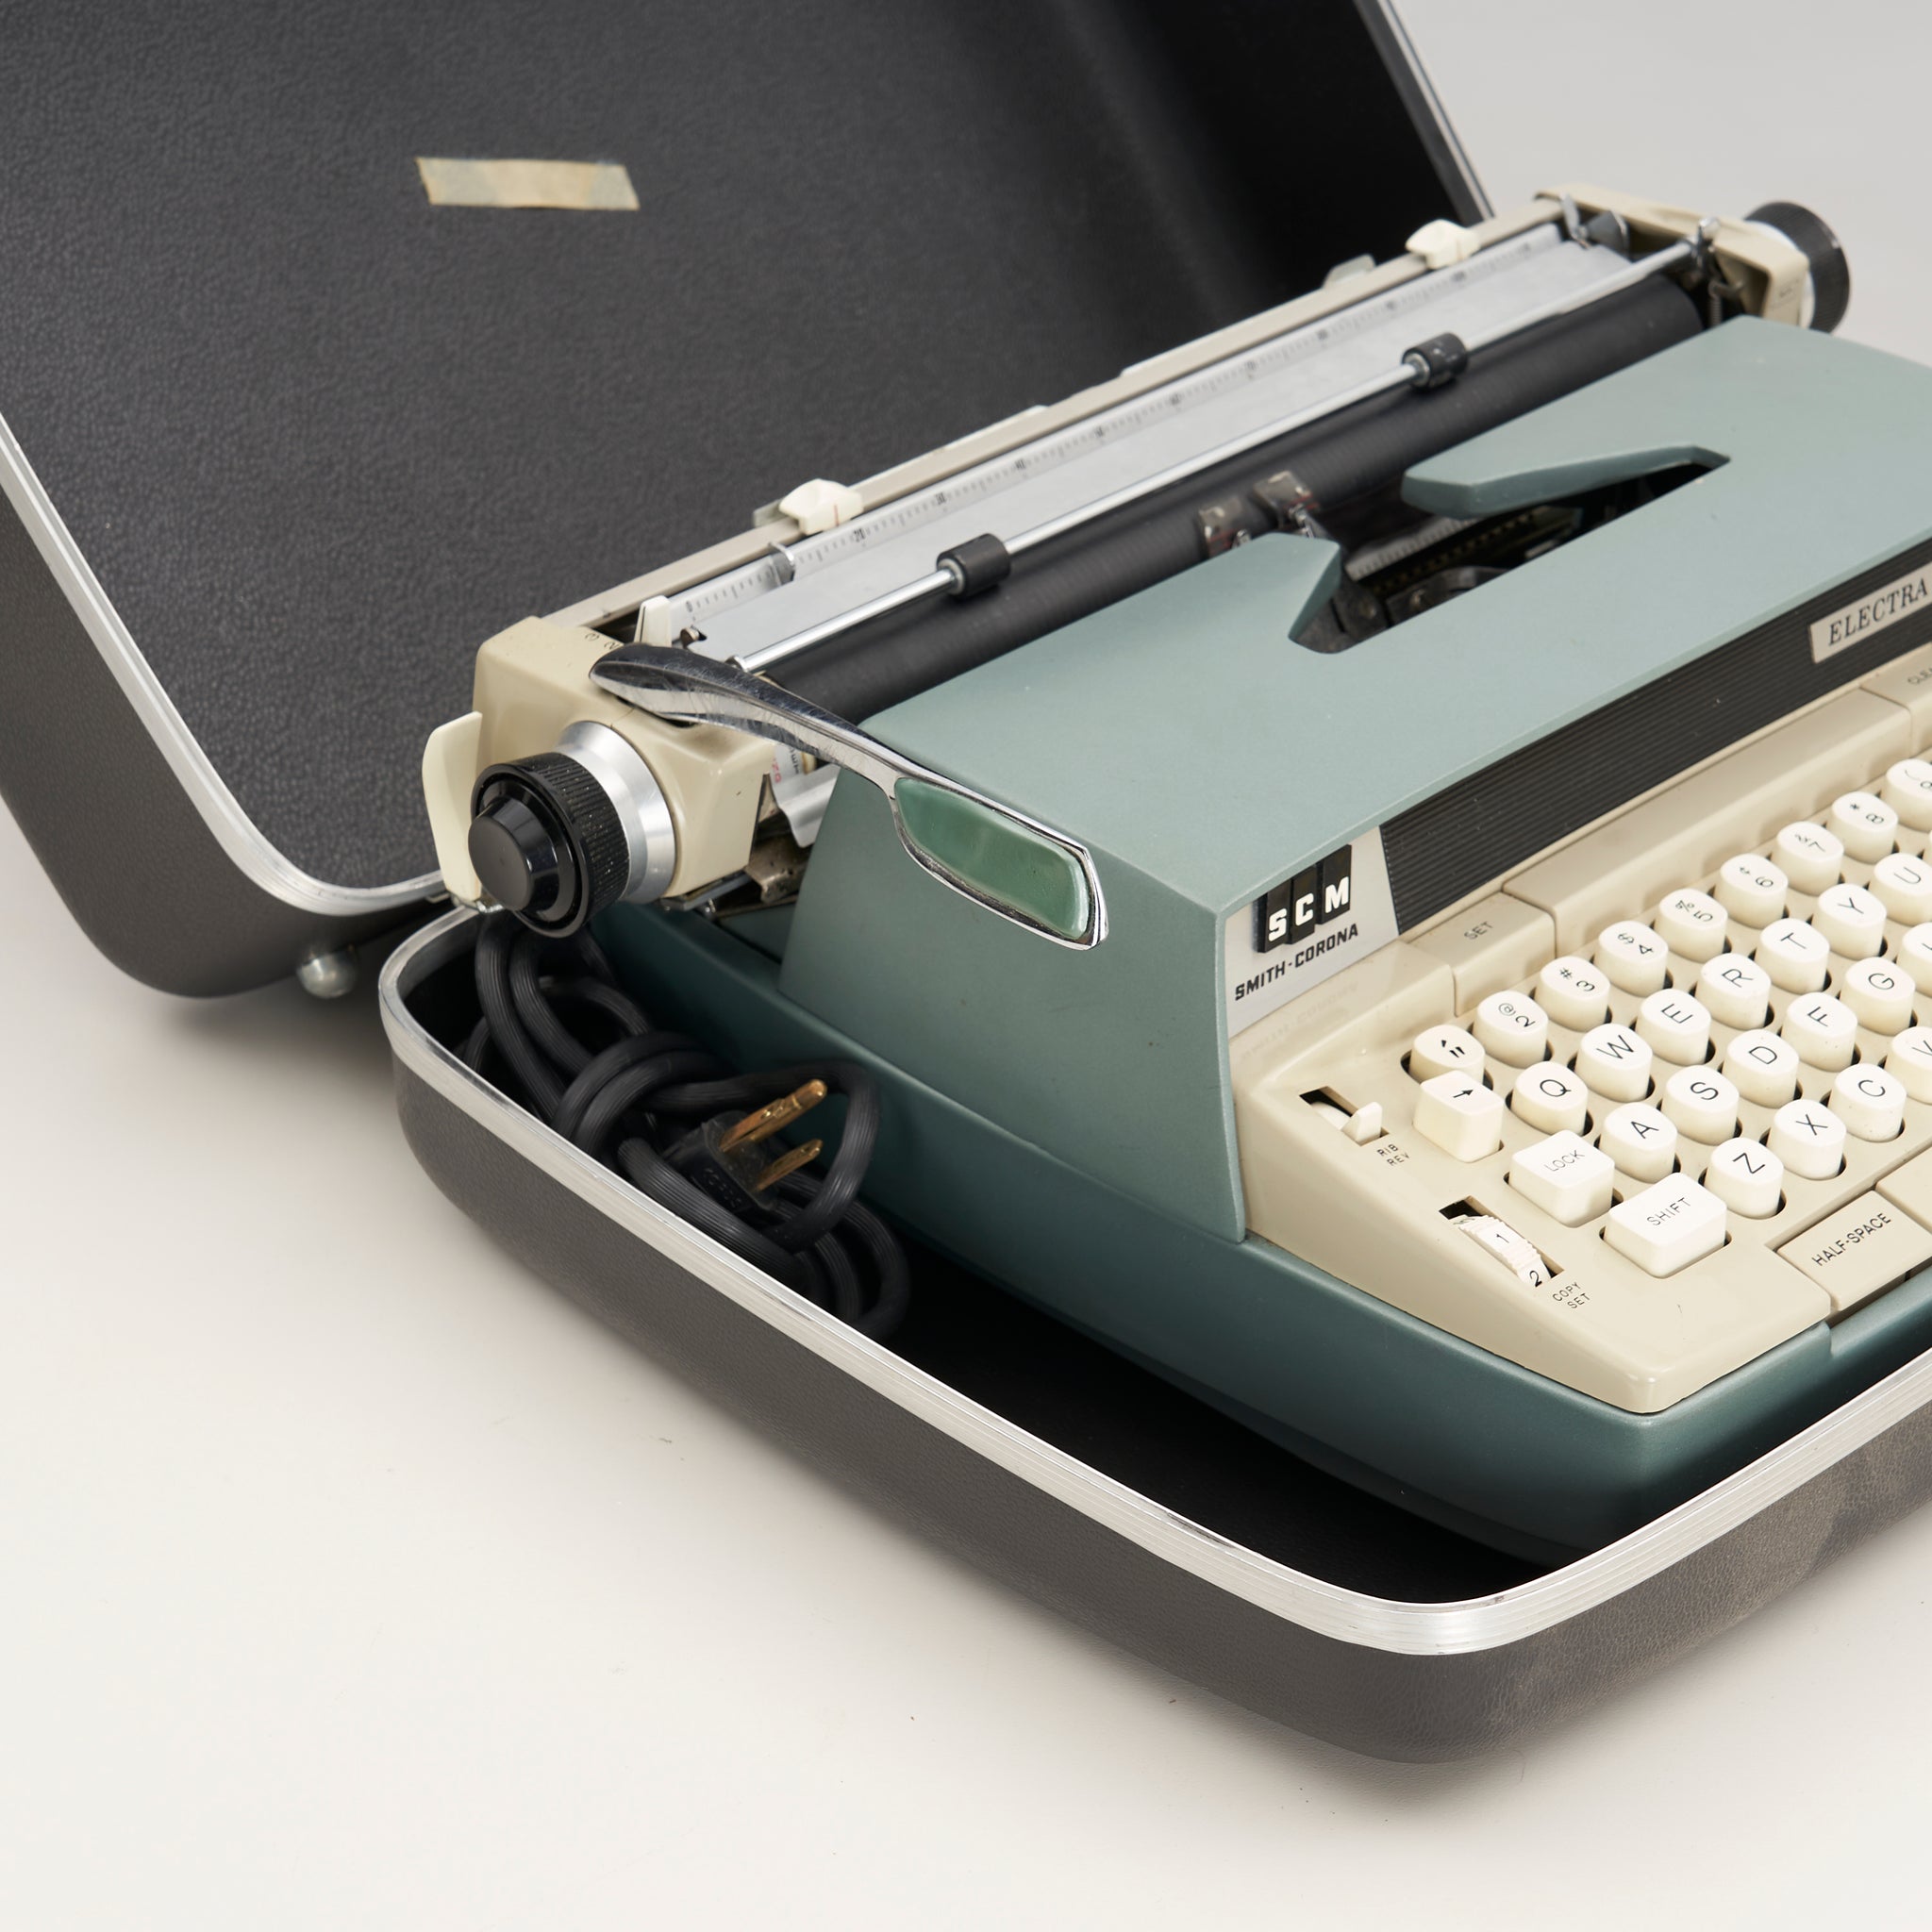 Vintage Electric Typewriter